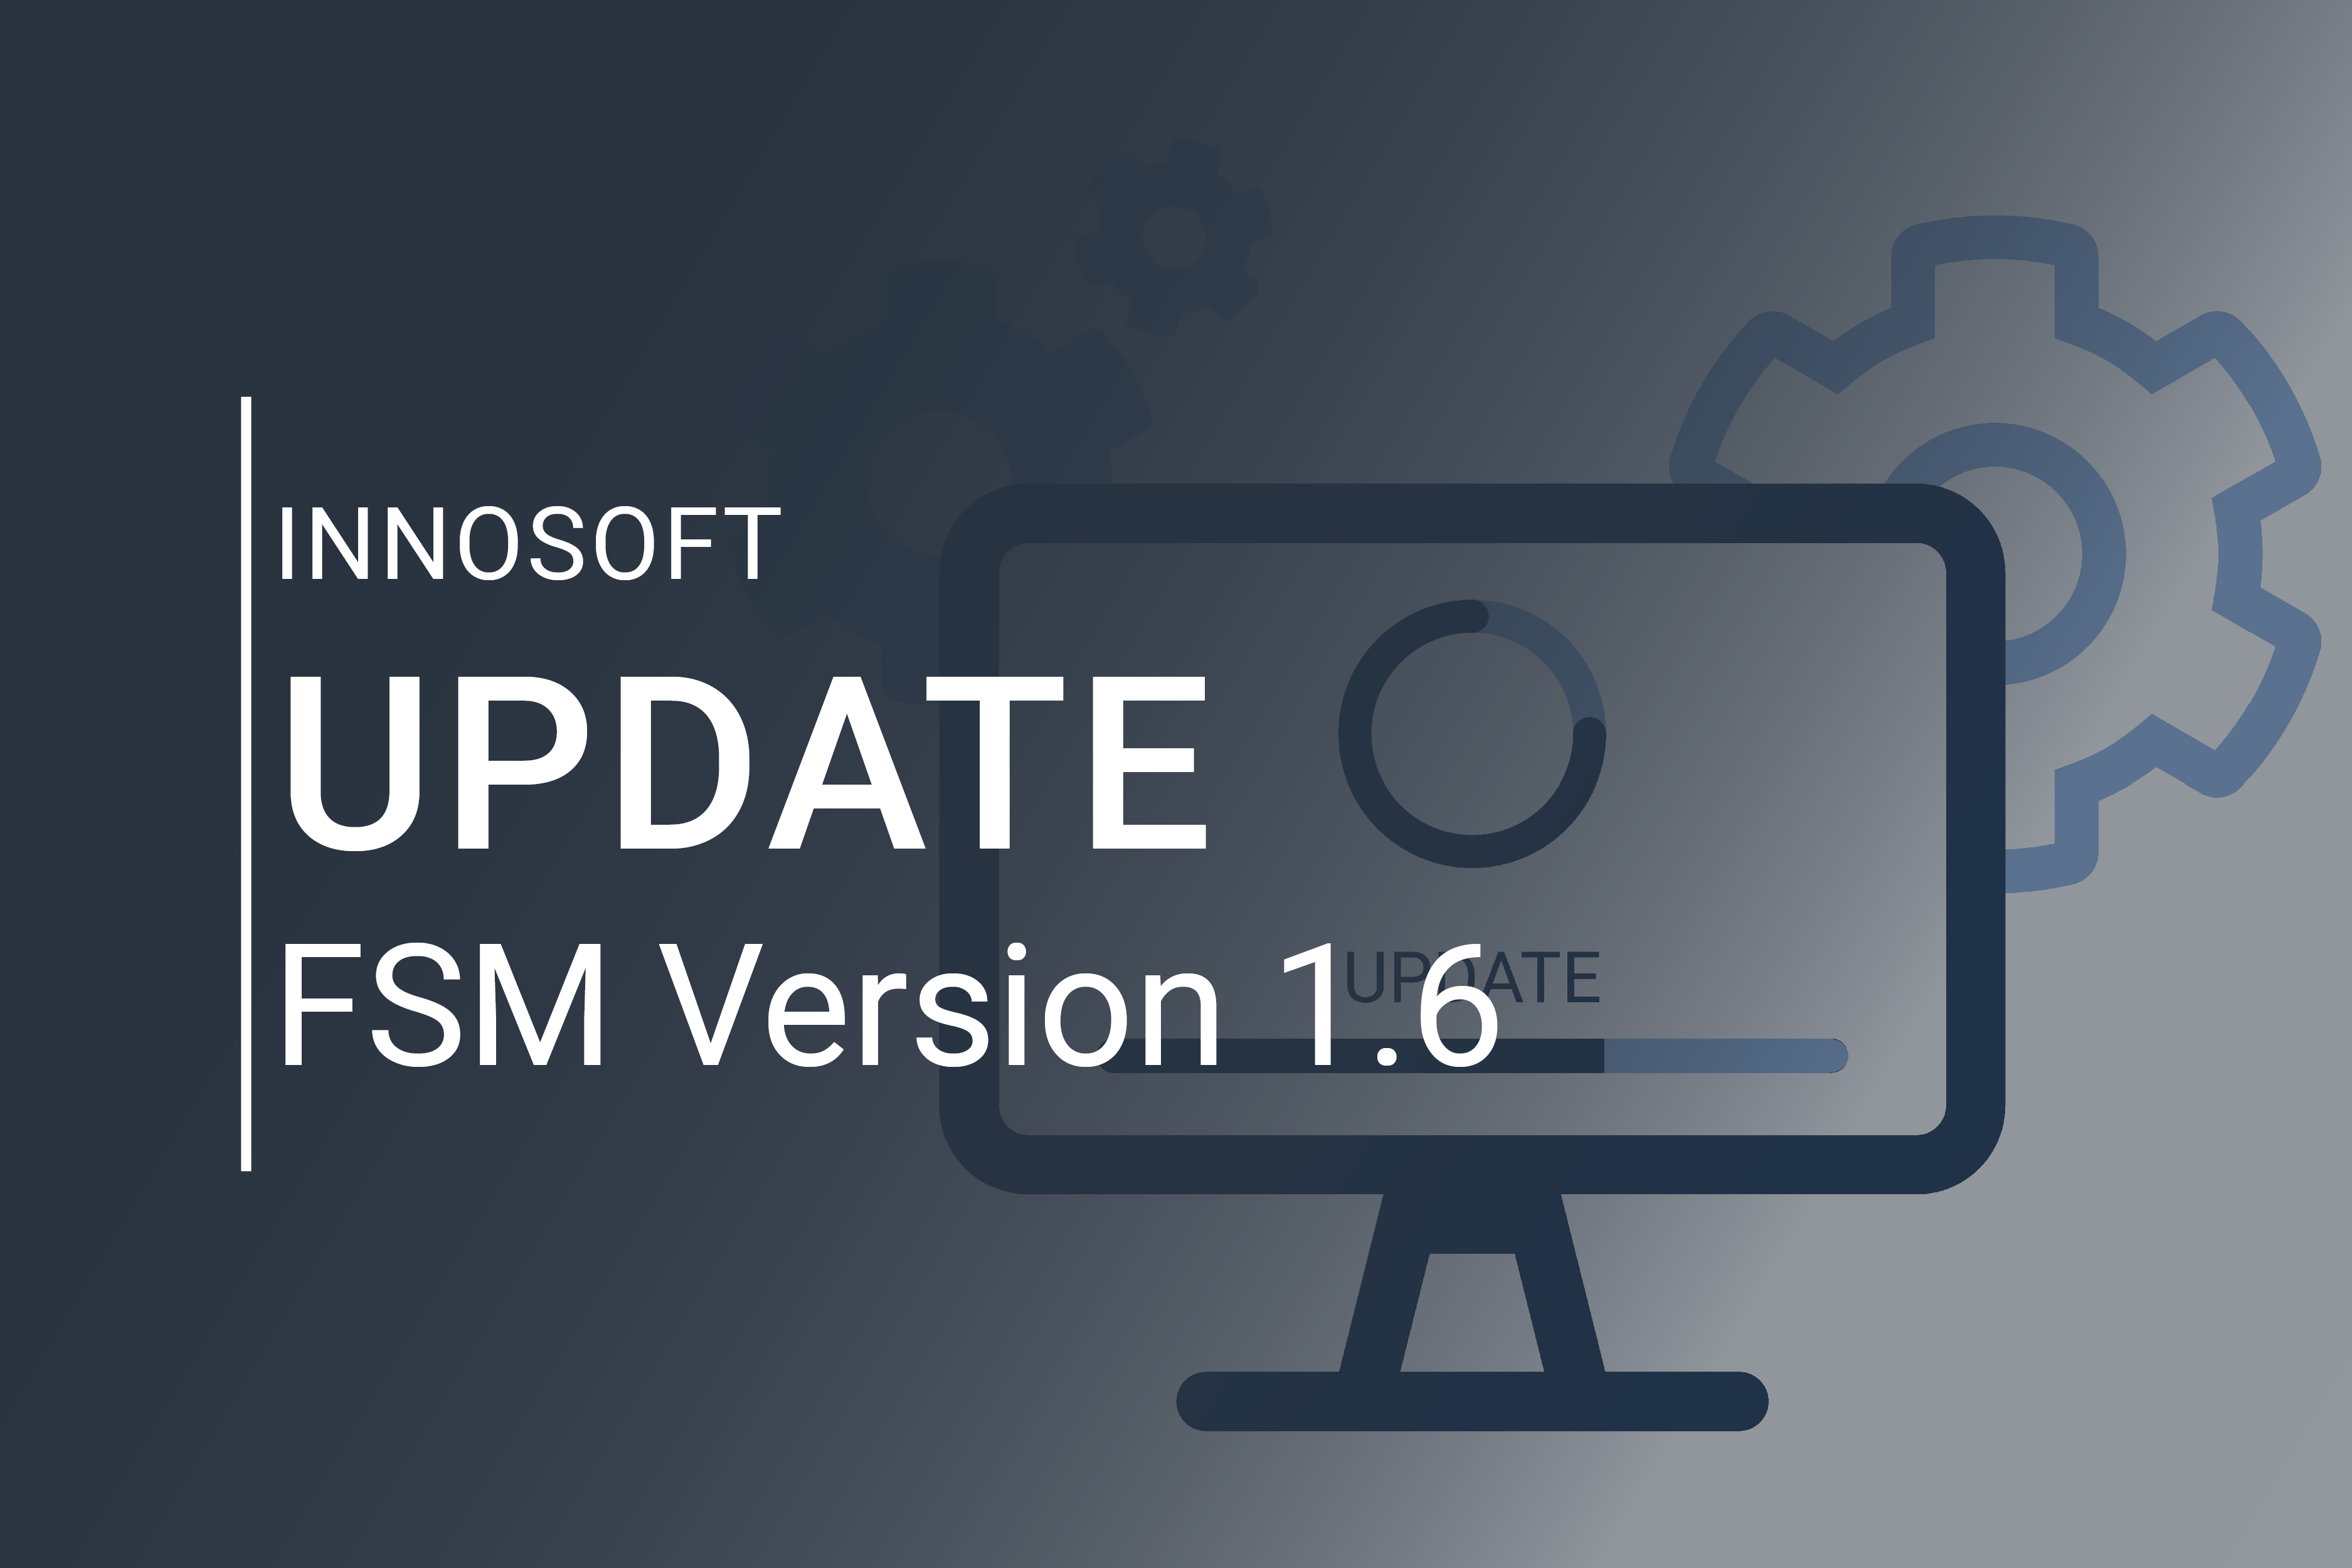 Innosoft Update FSM Version 1.6